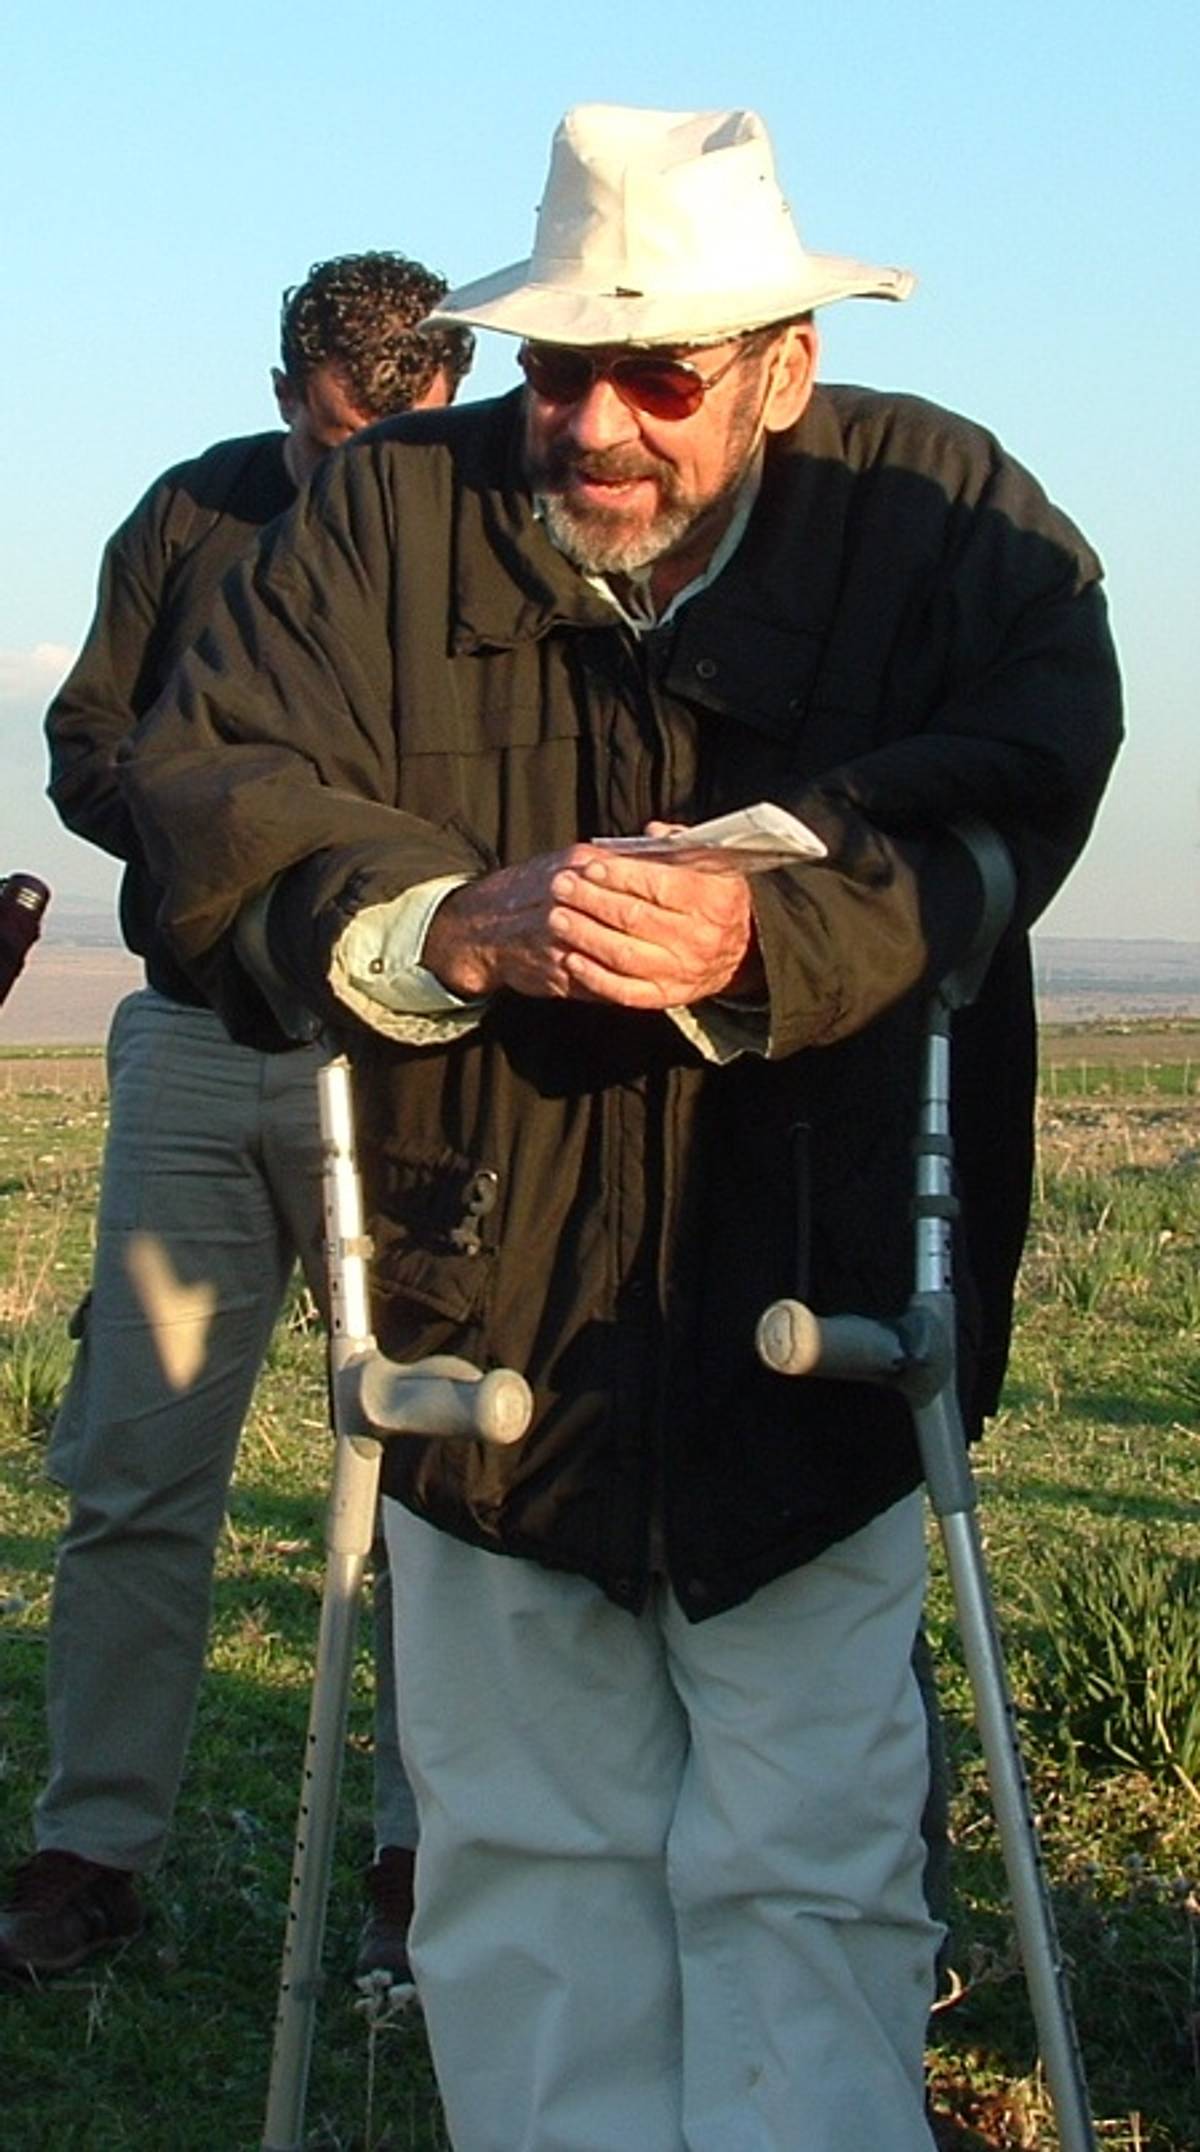 Adam Zertal, January 2005 (Wikipedia)